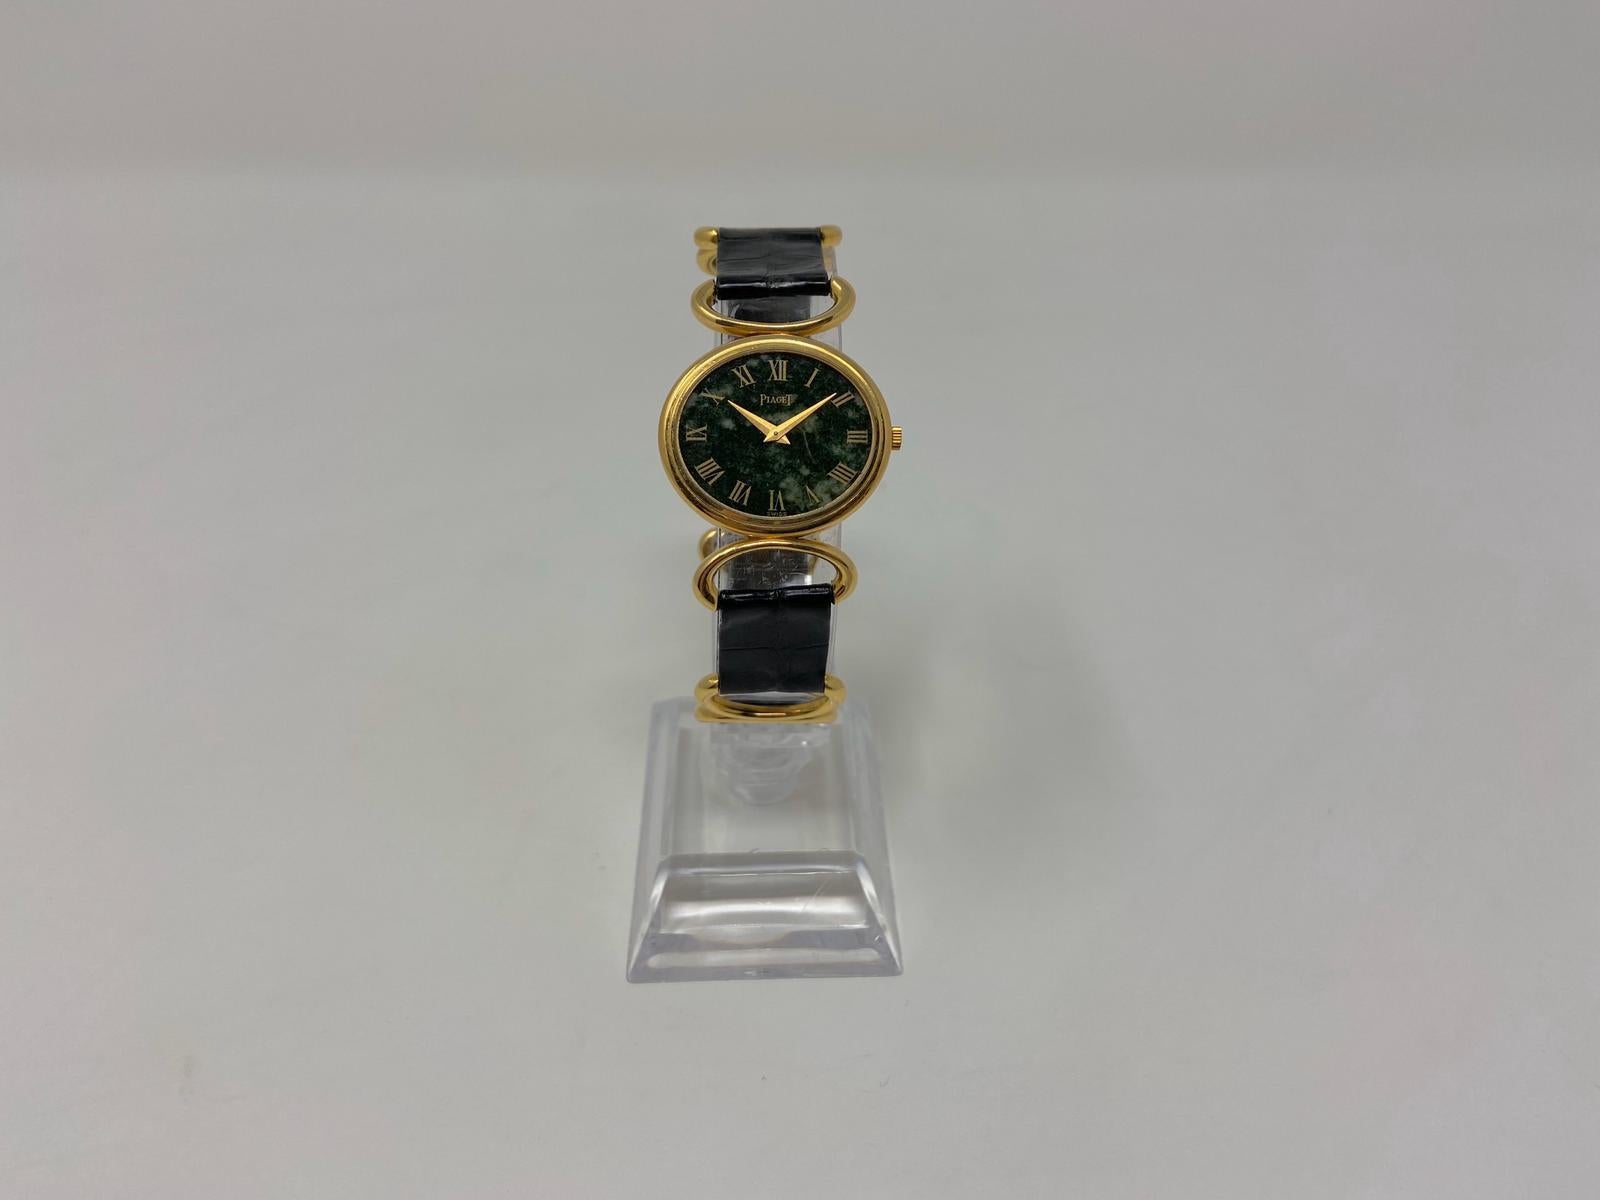 piaget Damenuhr aus Gold der 1970er Jahre, mit Zifferblatt in Jade, mit originalem Armband aus Alligatorleder, signiert von Piaget.
In ausgezeichnetem Zustand, es funktioniert perfekt.